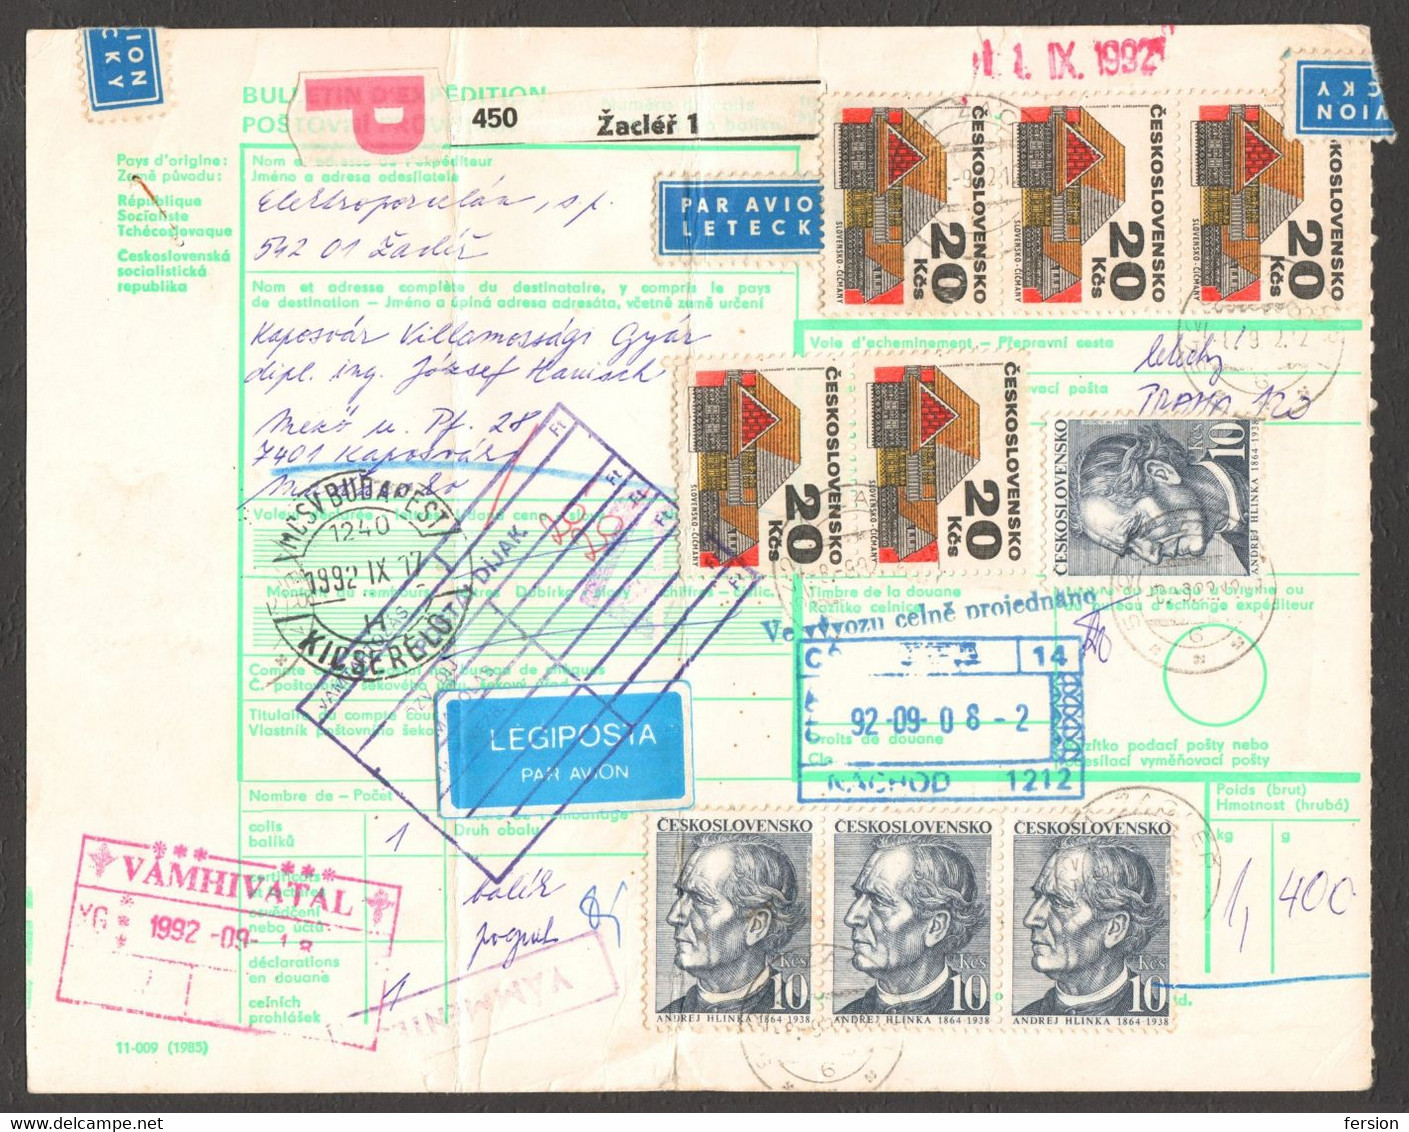 Bulletin D'expédition Parcel Packet Despatch FORM Czechoslovakia Hungary CUSTOMS Postmark AIR MAIL LABEL VIGNETTE 1992 - Non Classificati